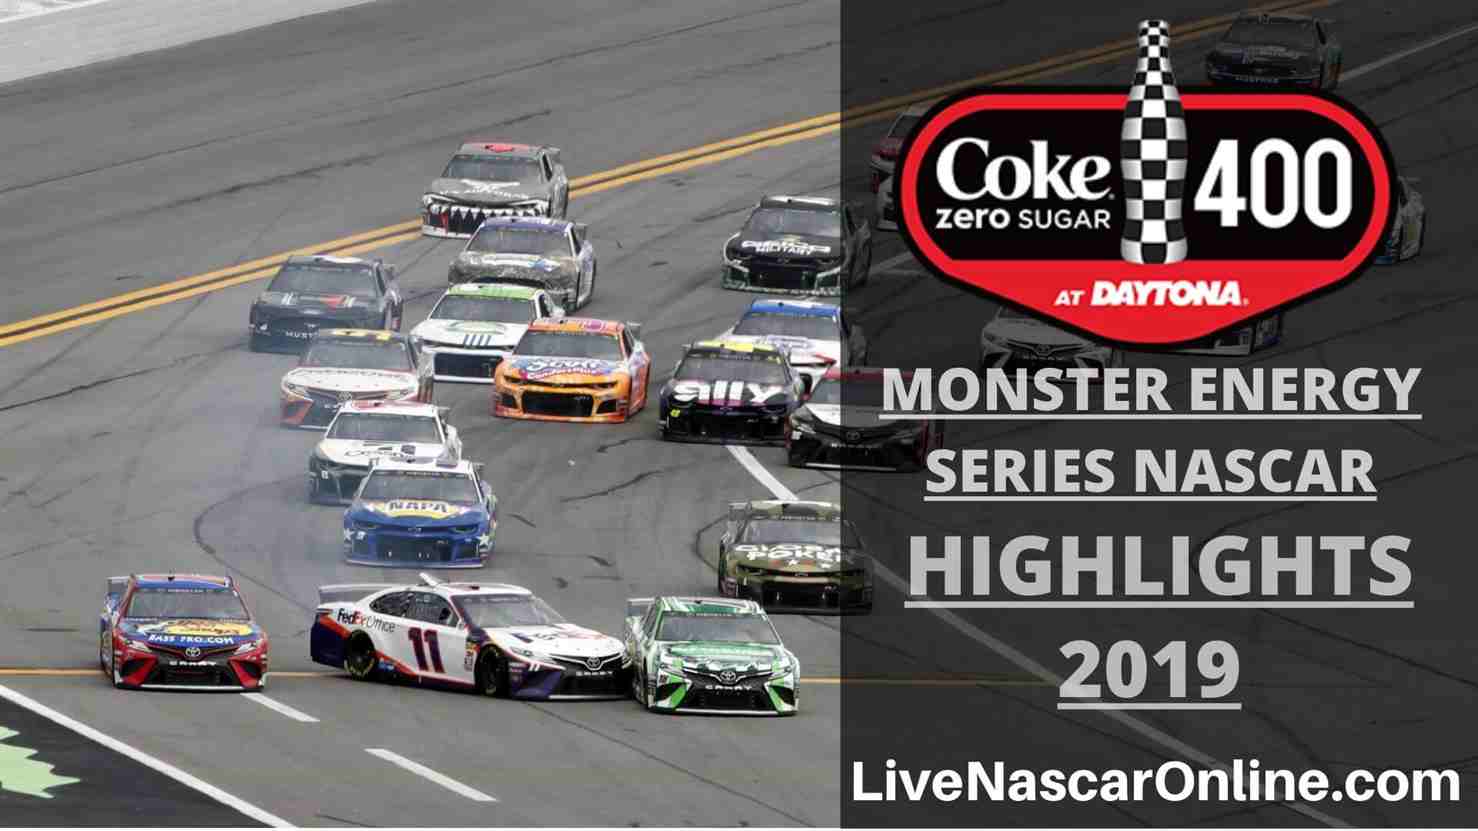 NASCAR Monster Energy COKE ZERO SUGAR 400 Highlights 2019 Online